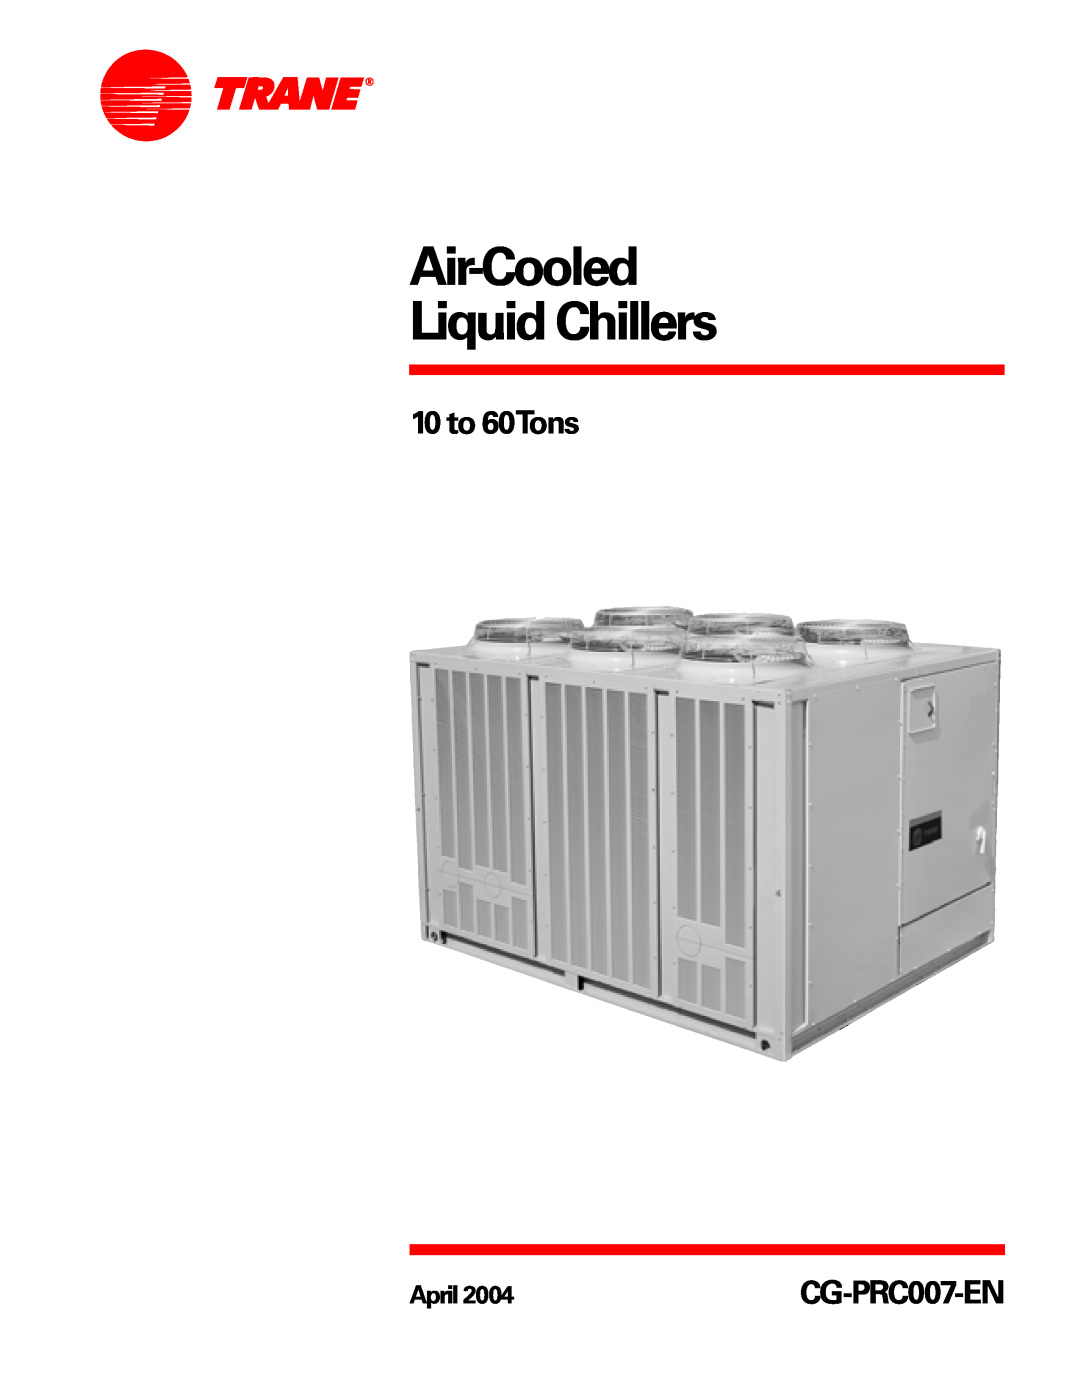 Trane CG-PRC007-EN manual Air-CooledLiquid Chillers, 10 to 60Tons, April 